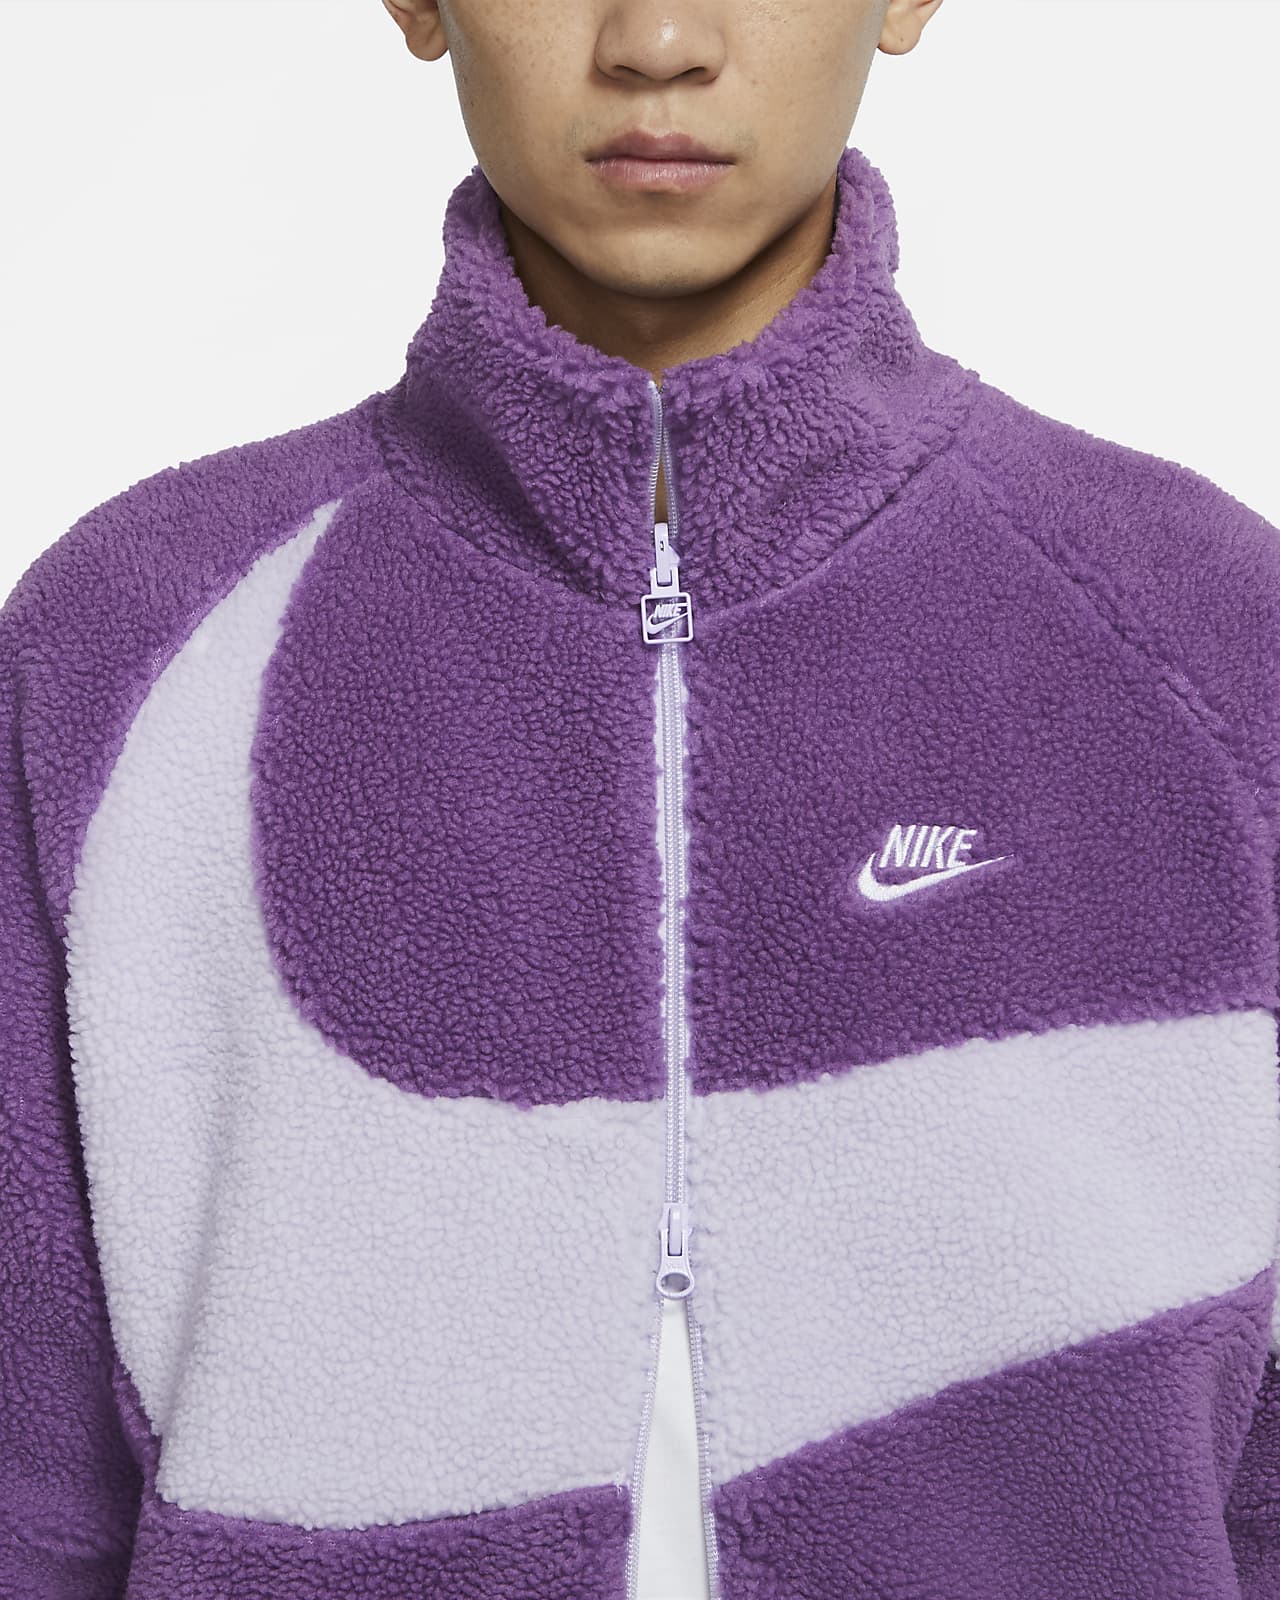 rafael nadal purple jacket